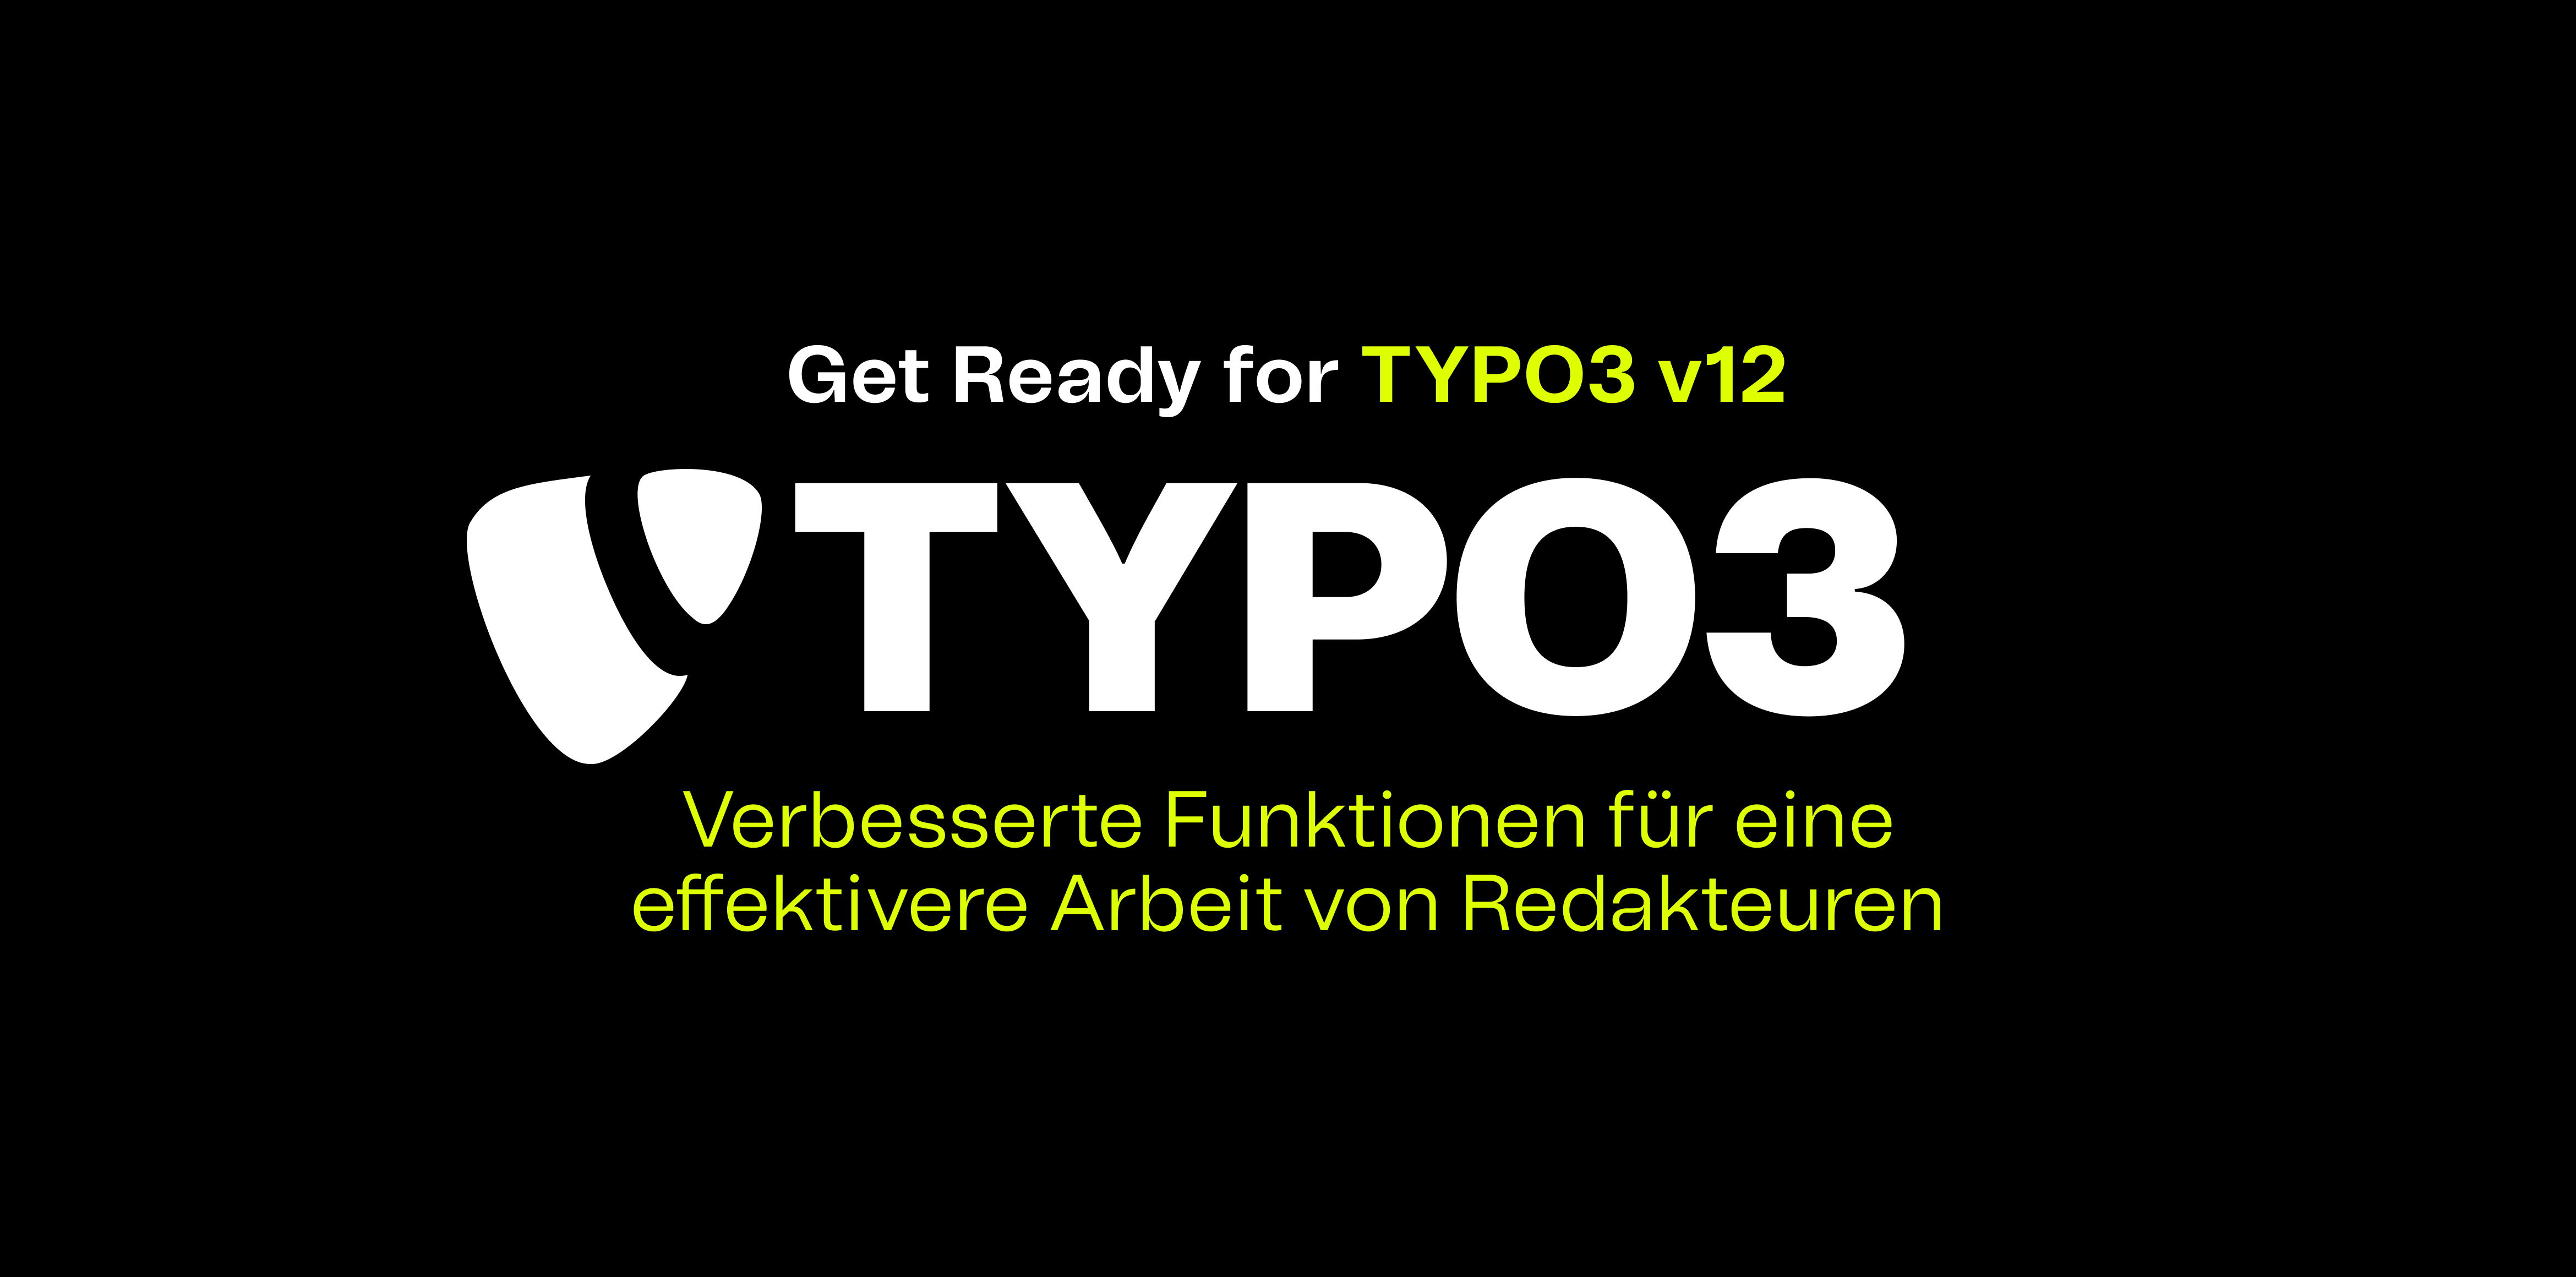 Abbildung eines weißen Typo3 Logos auf schwarzem Hintergrund. Darüber und darunter steht: Get ready for Typo3 v12. Verbesserte Funktionen für eine effektivere Arbeit von Redakteuren.